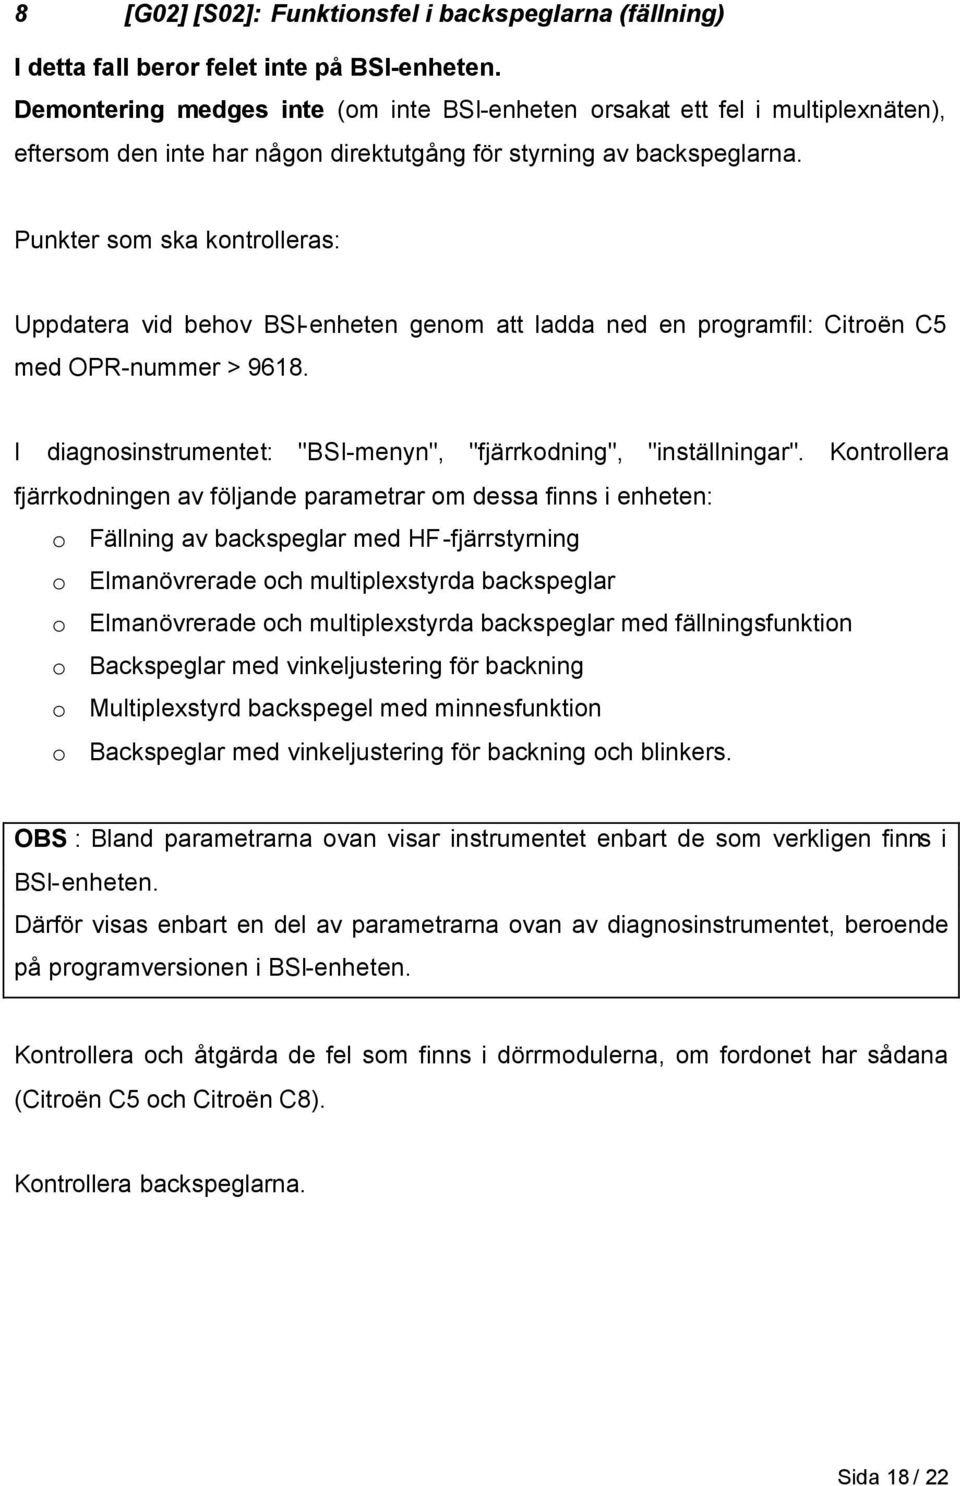 Punkter som ska kontrolleras: Uppdatera vid behov BSI-enheten genom att ladda ned en programfil: Citroën C5 med OPR-nummer > 9618. I diagnosinstrumentet: "BSI-menyn", "fjärrkodning", "inställningar".